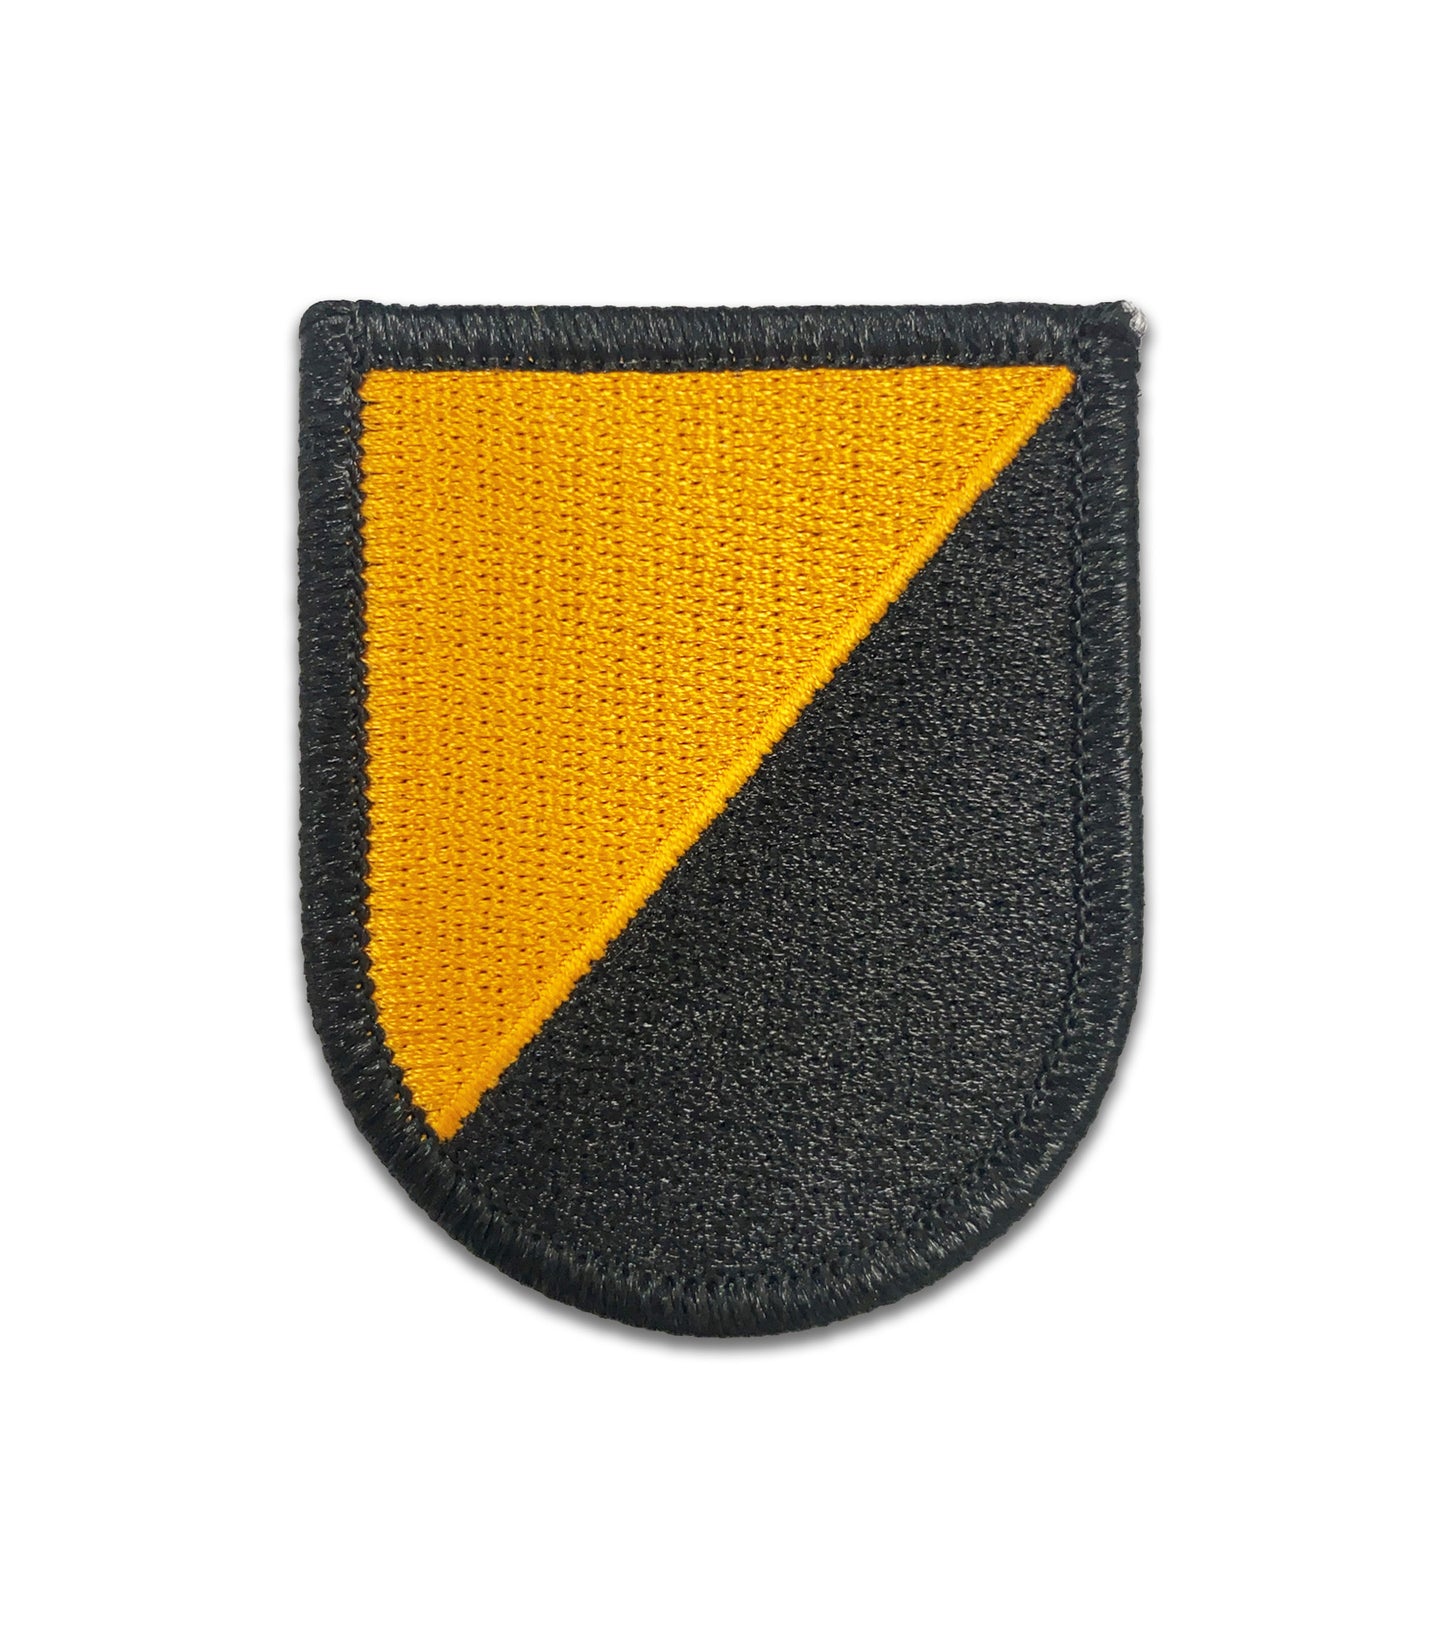 U.S. Army Ranger Training Brigade Flash